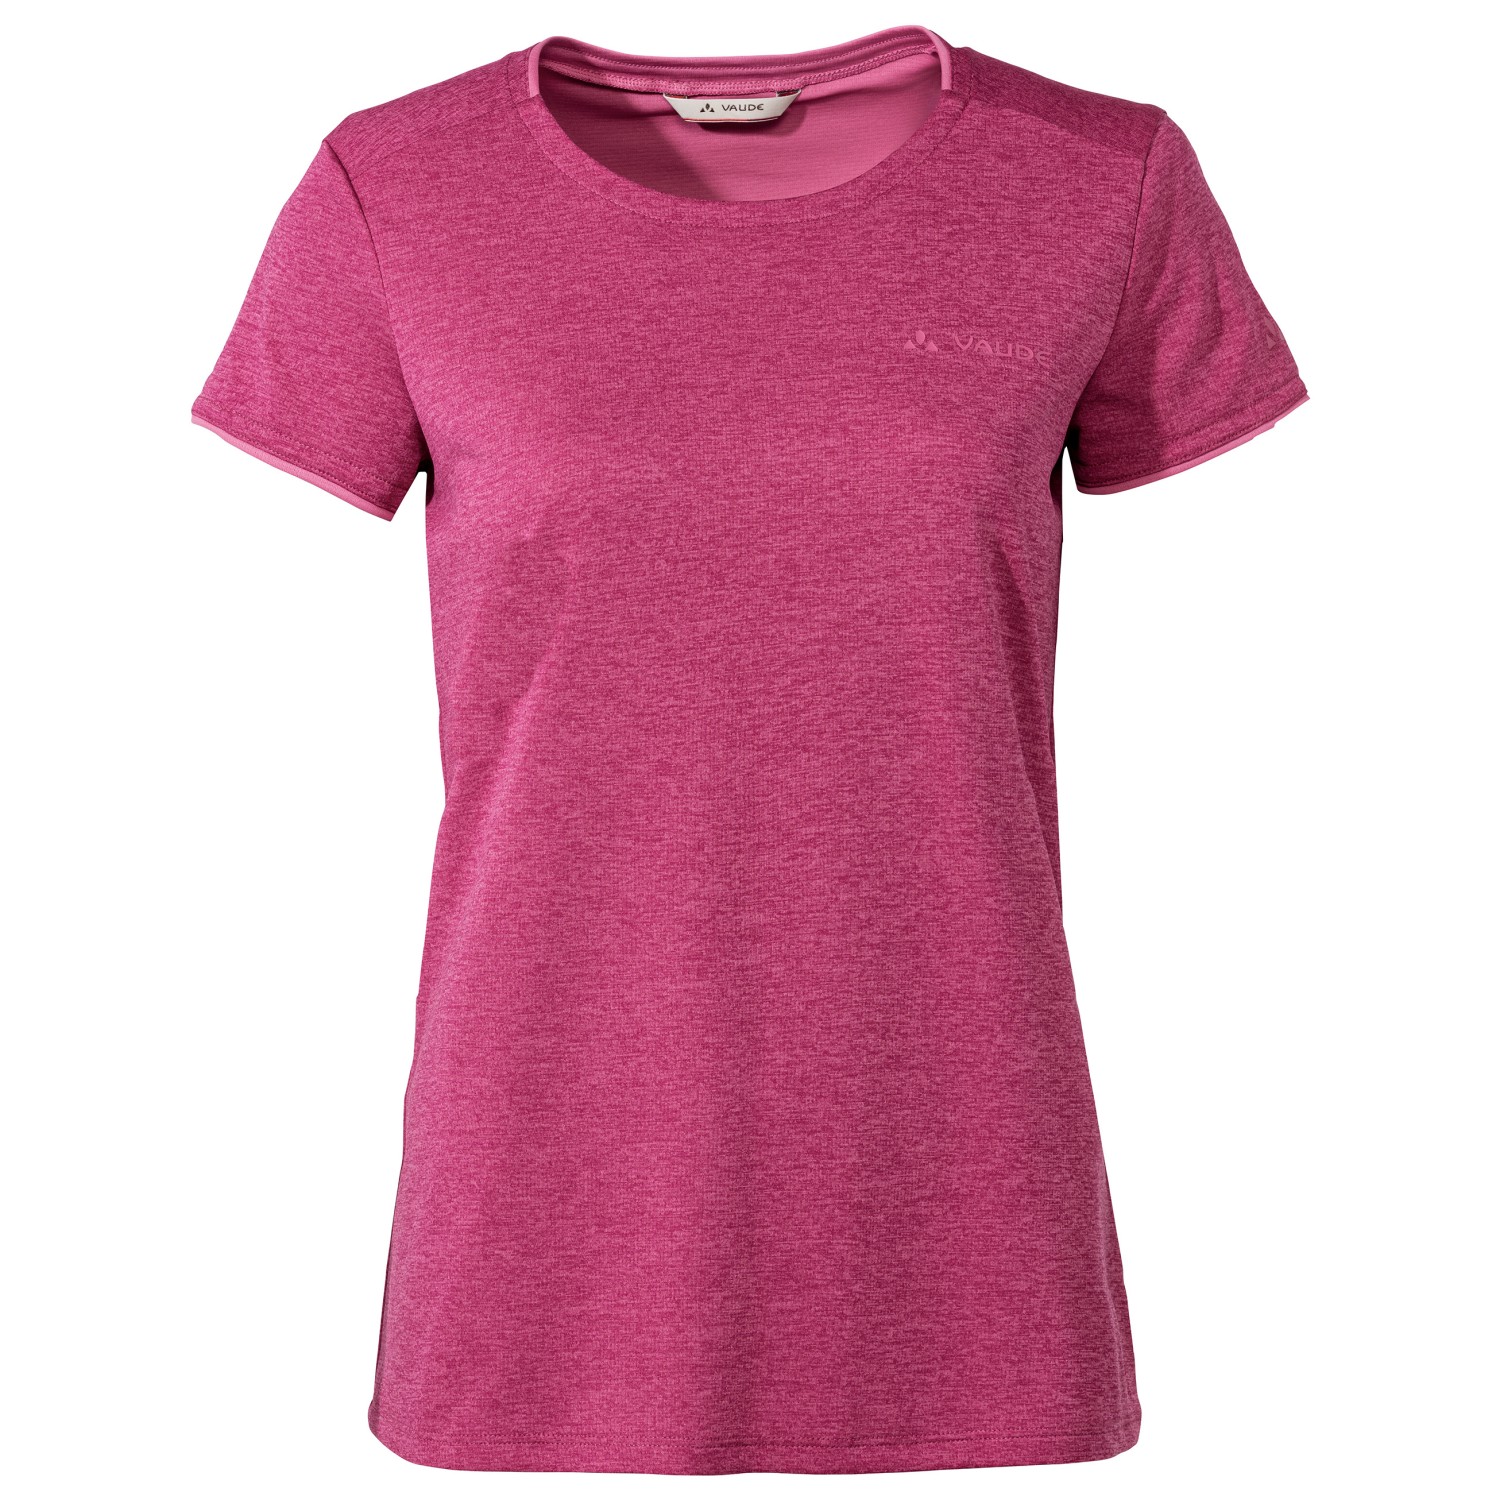 Функциональная рубашка Vaude Women's Essential T Shirt, цвет Rich Pink